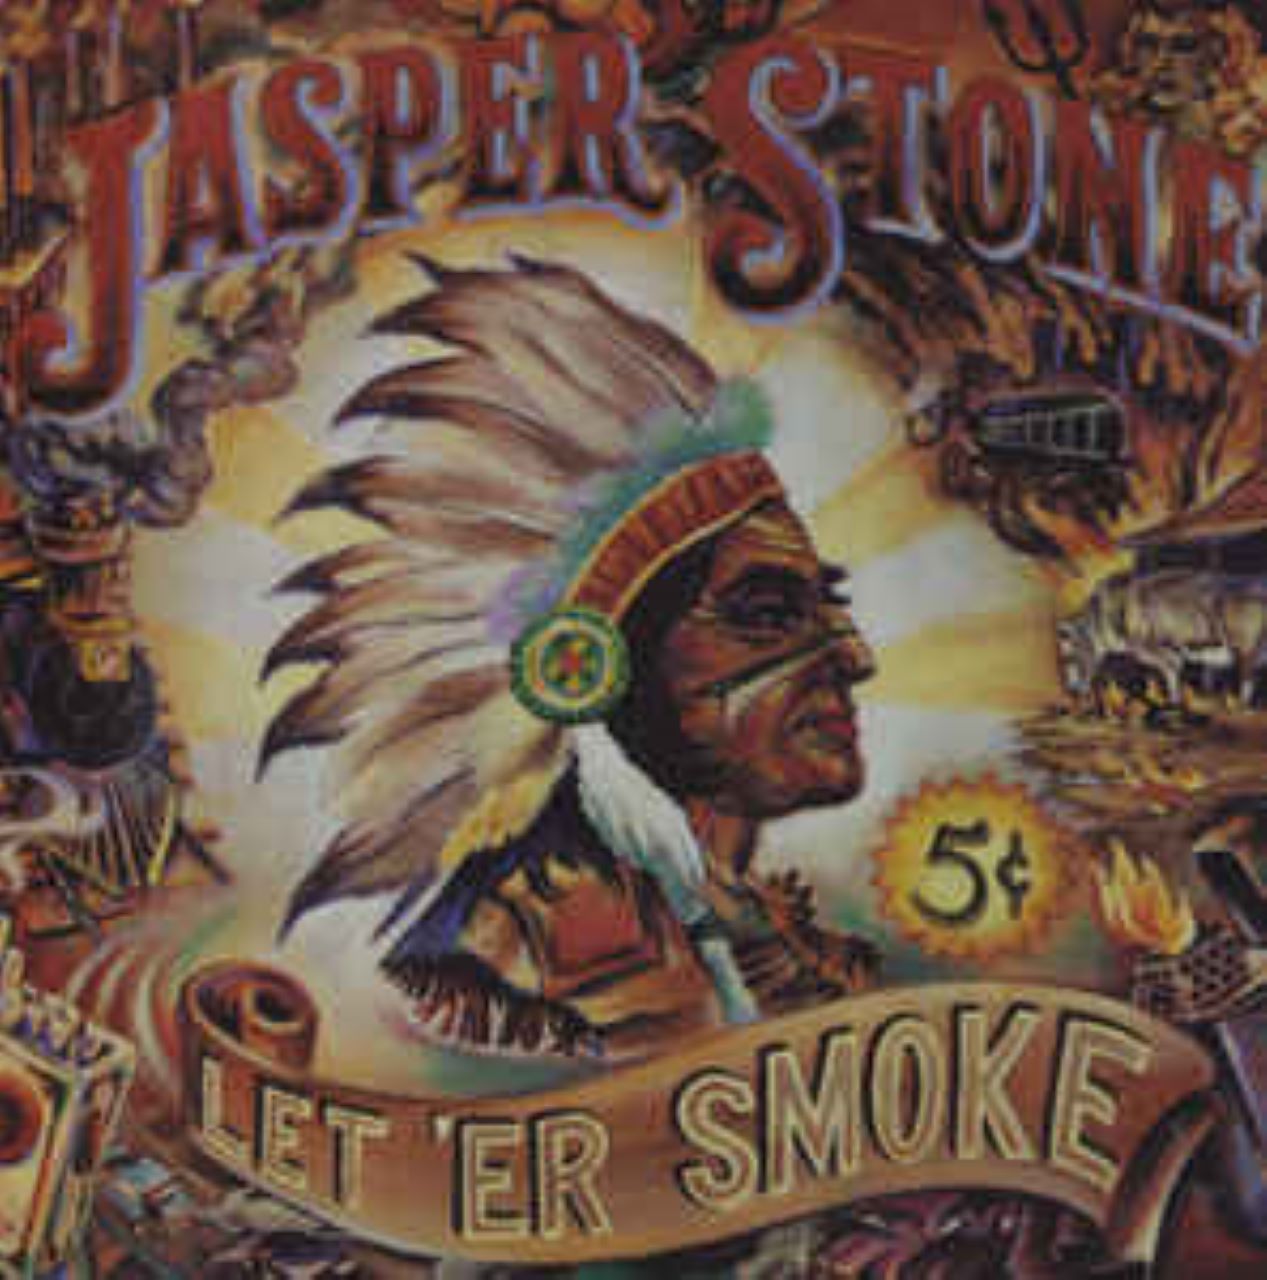 Jasper Stone – Let ‘er Smoke cover album